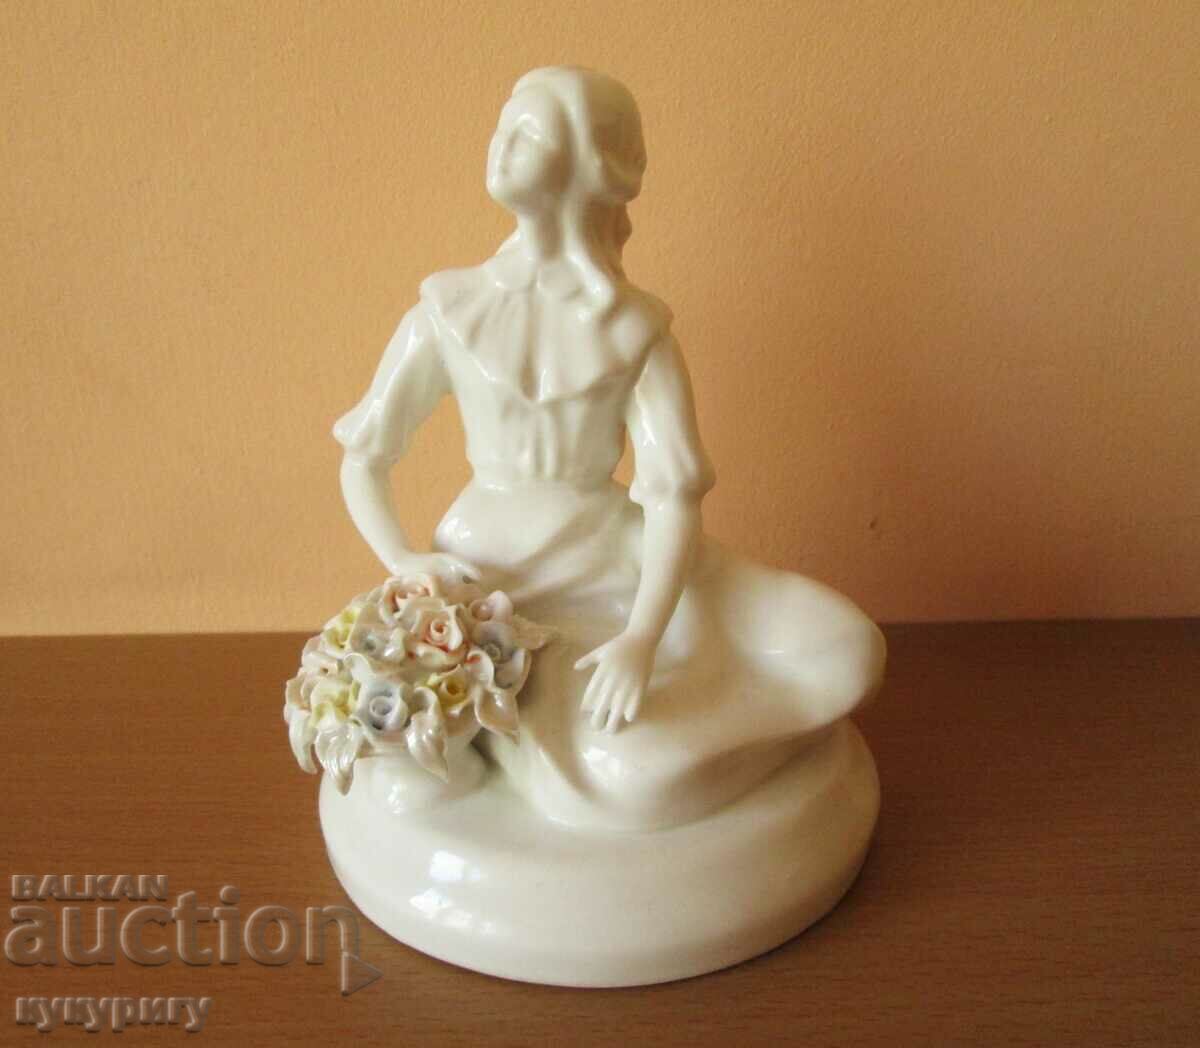 A delicate porcelain figure figurine